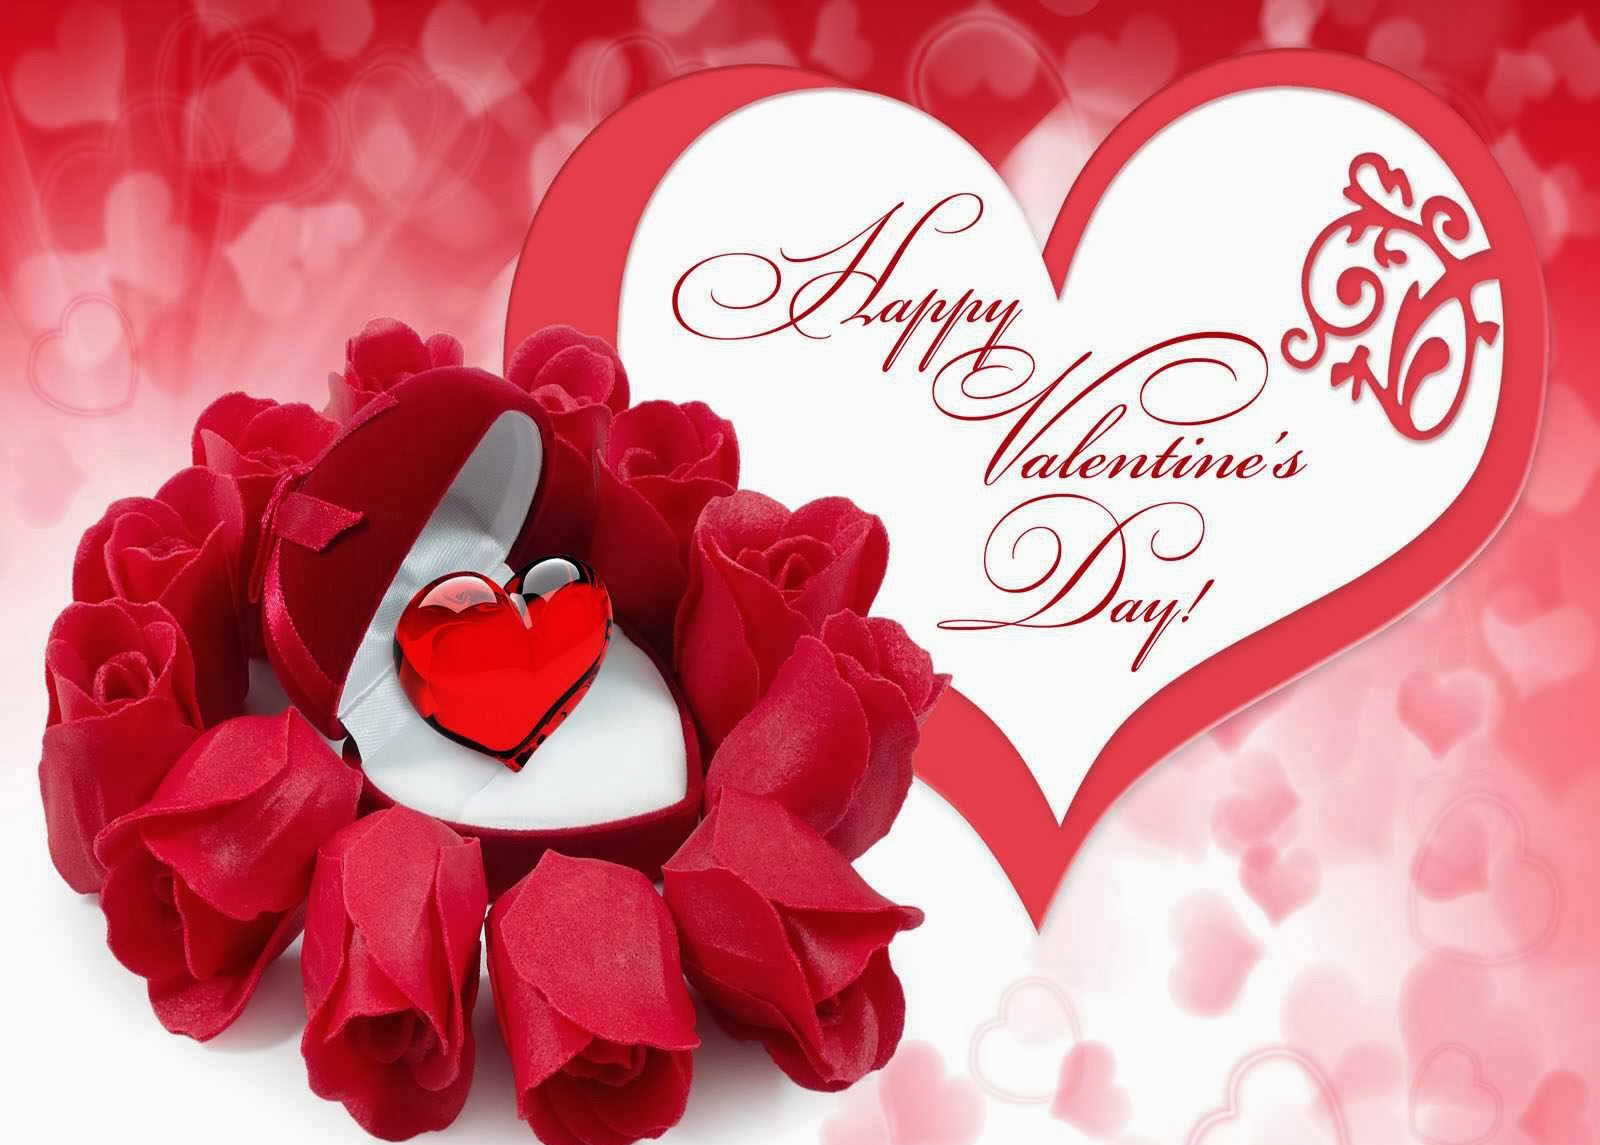 Thiệp Valentine đẹp nhất 2024: Thiệp Valentine đẹp nhất 2024 sẽ mang lại cho bạn nhiều niềm vui và hạnh phúc trong dịp Valentine này. Với những mẫu thiệp đẹp và sang trọng cùng những ý nghĩa đặc biệt, chắc chắn sẽ khiến món quà của bạn trở nên độc nhất vô nhị và tuyệt vời nhất.